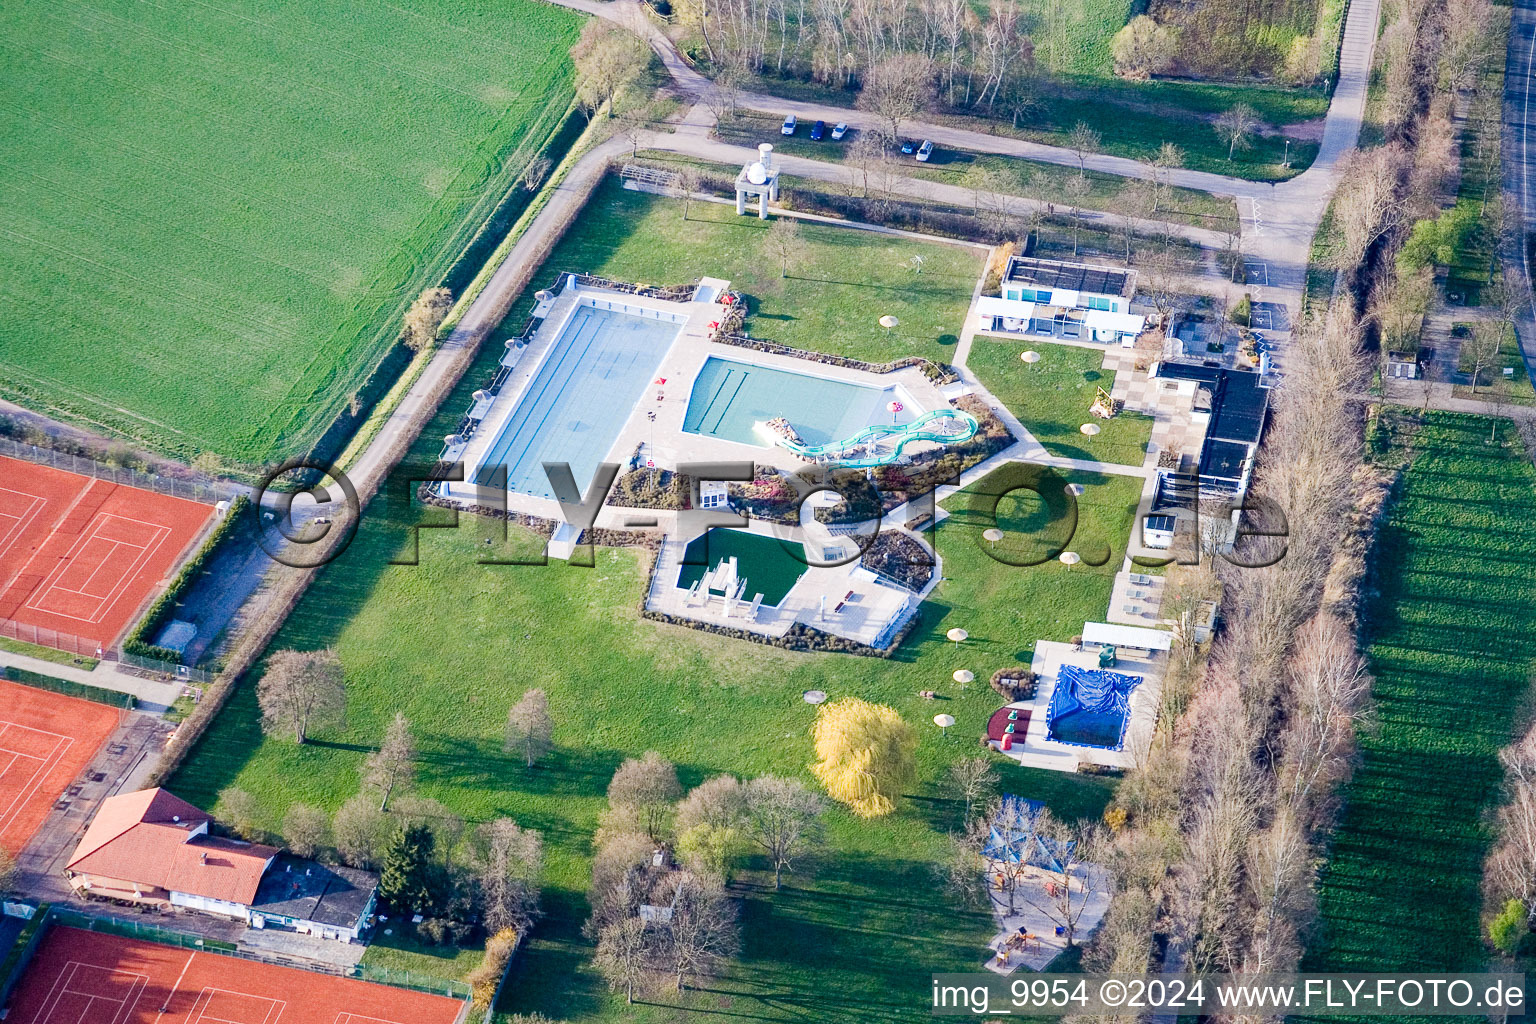 Vue aérienne de Piscine du parc aquatique Bellheim piscine extérieure du quartier Sondernheim à Bellheim dans le département Rhénanie-Palatinat, Allemagne